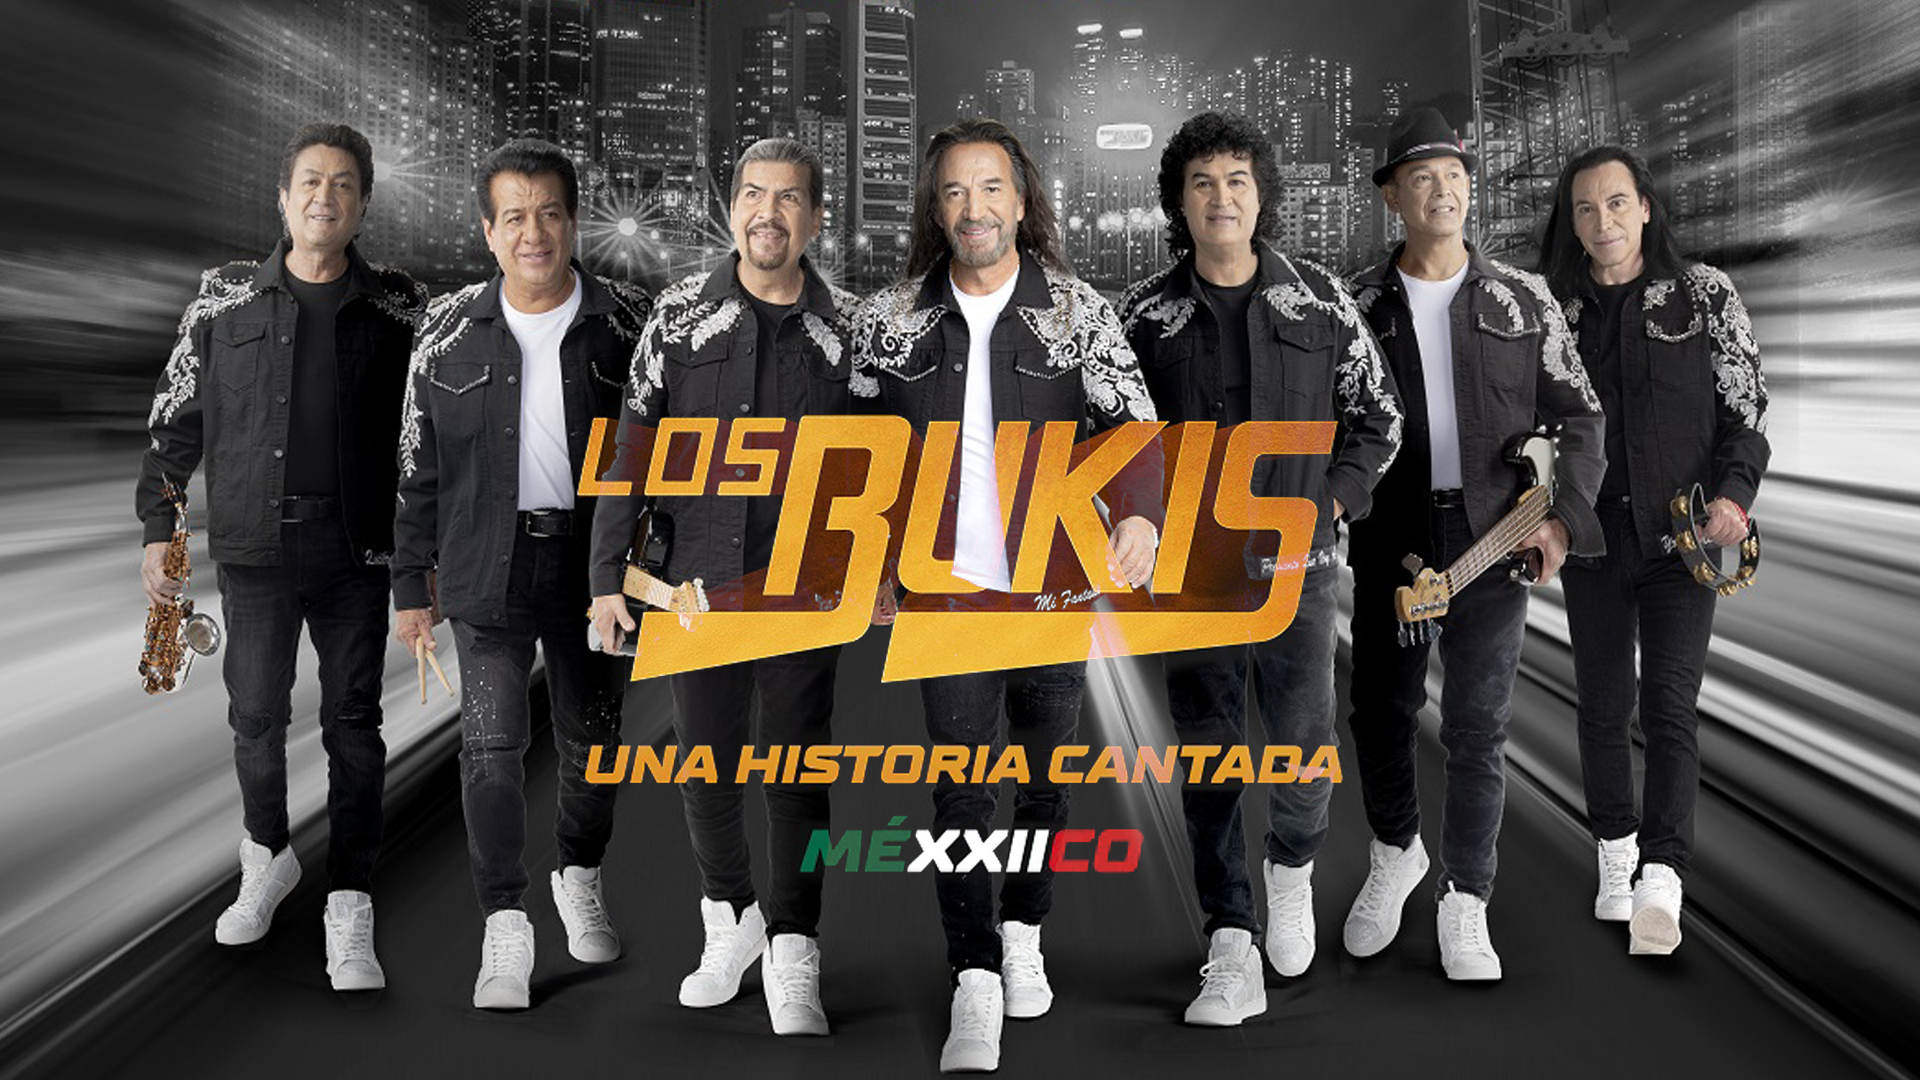 Los Bukis anuncian su gira "Una historia cantada" por México